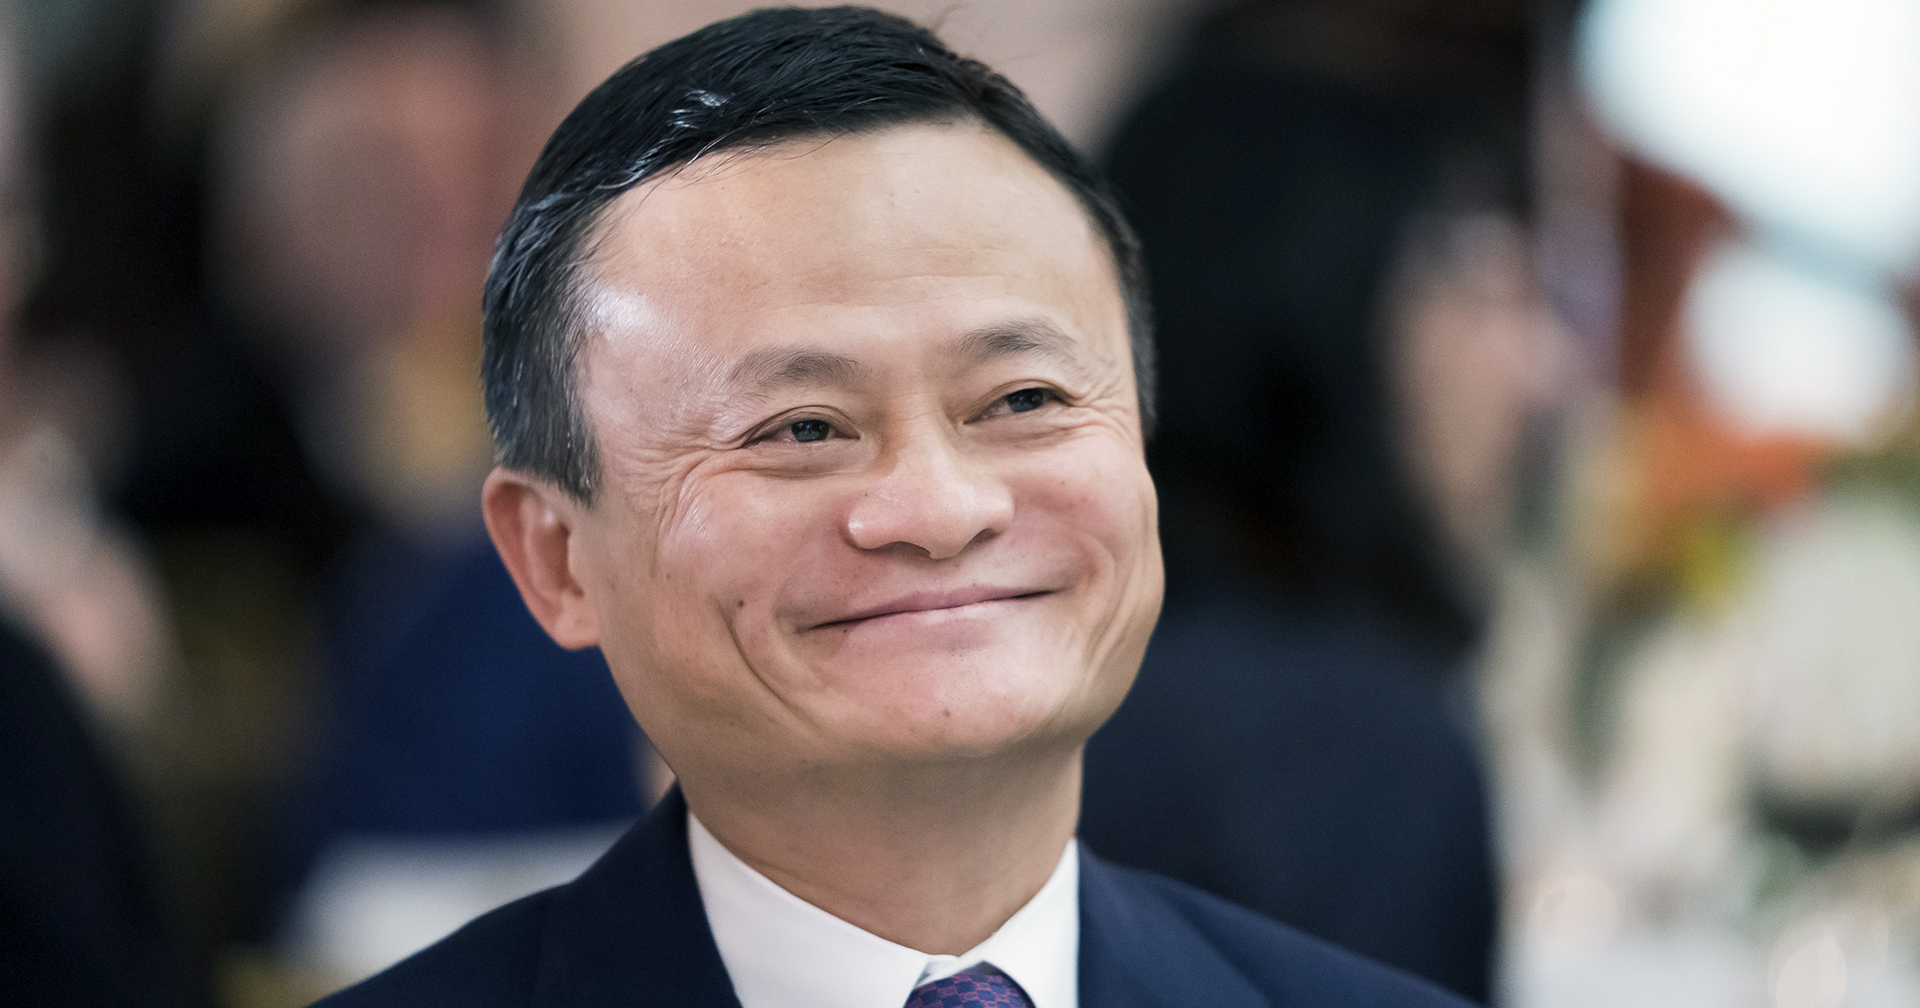 Jack Ma สละอำนาจในการควบคุม Ant Group หลังบริษัทปรับโครงสร้างครั้งใหญ่